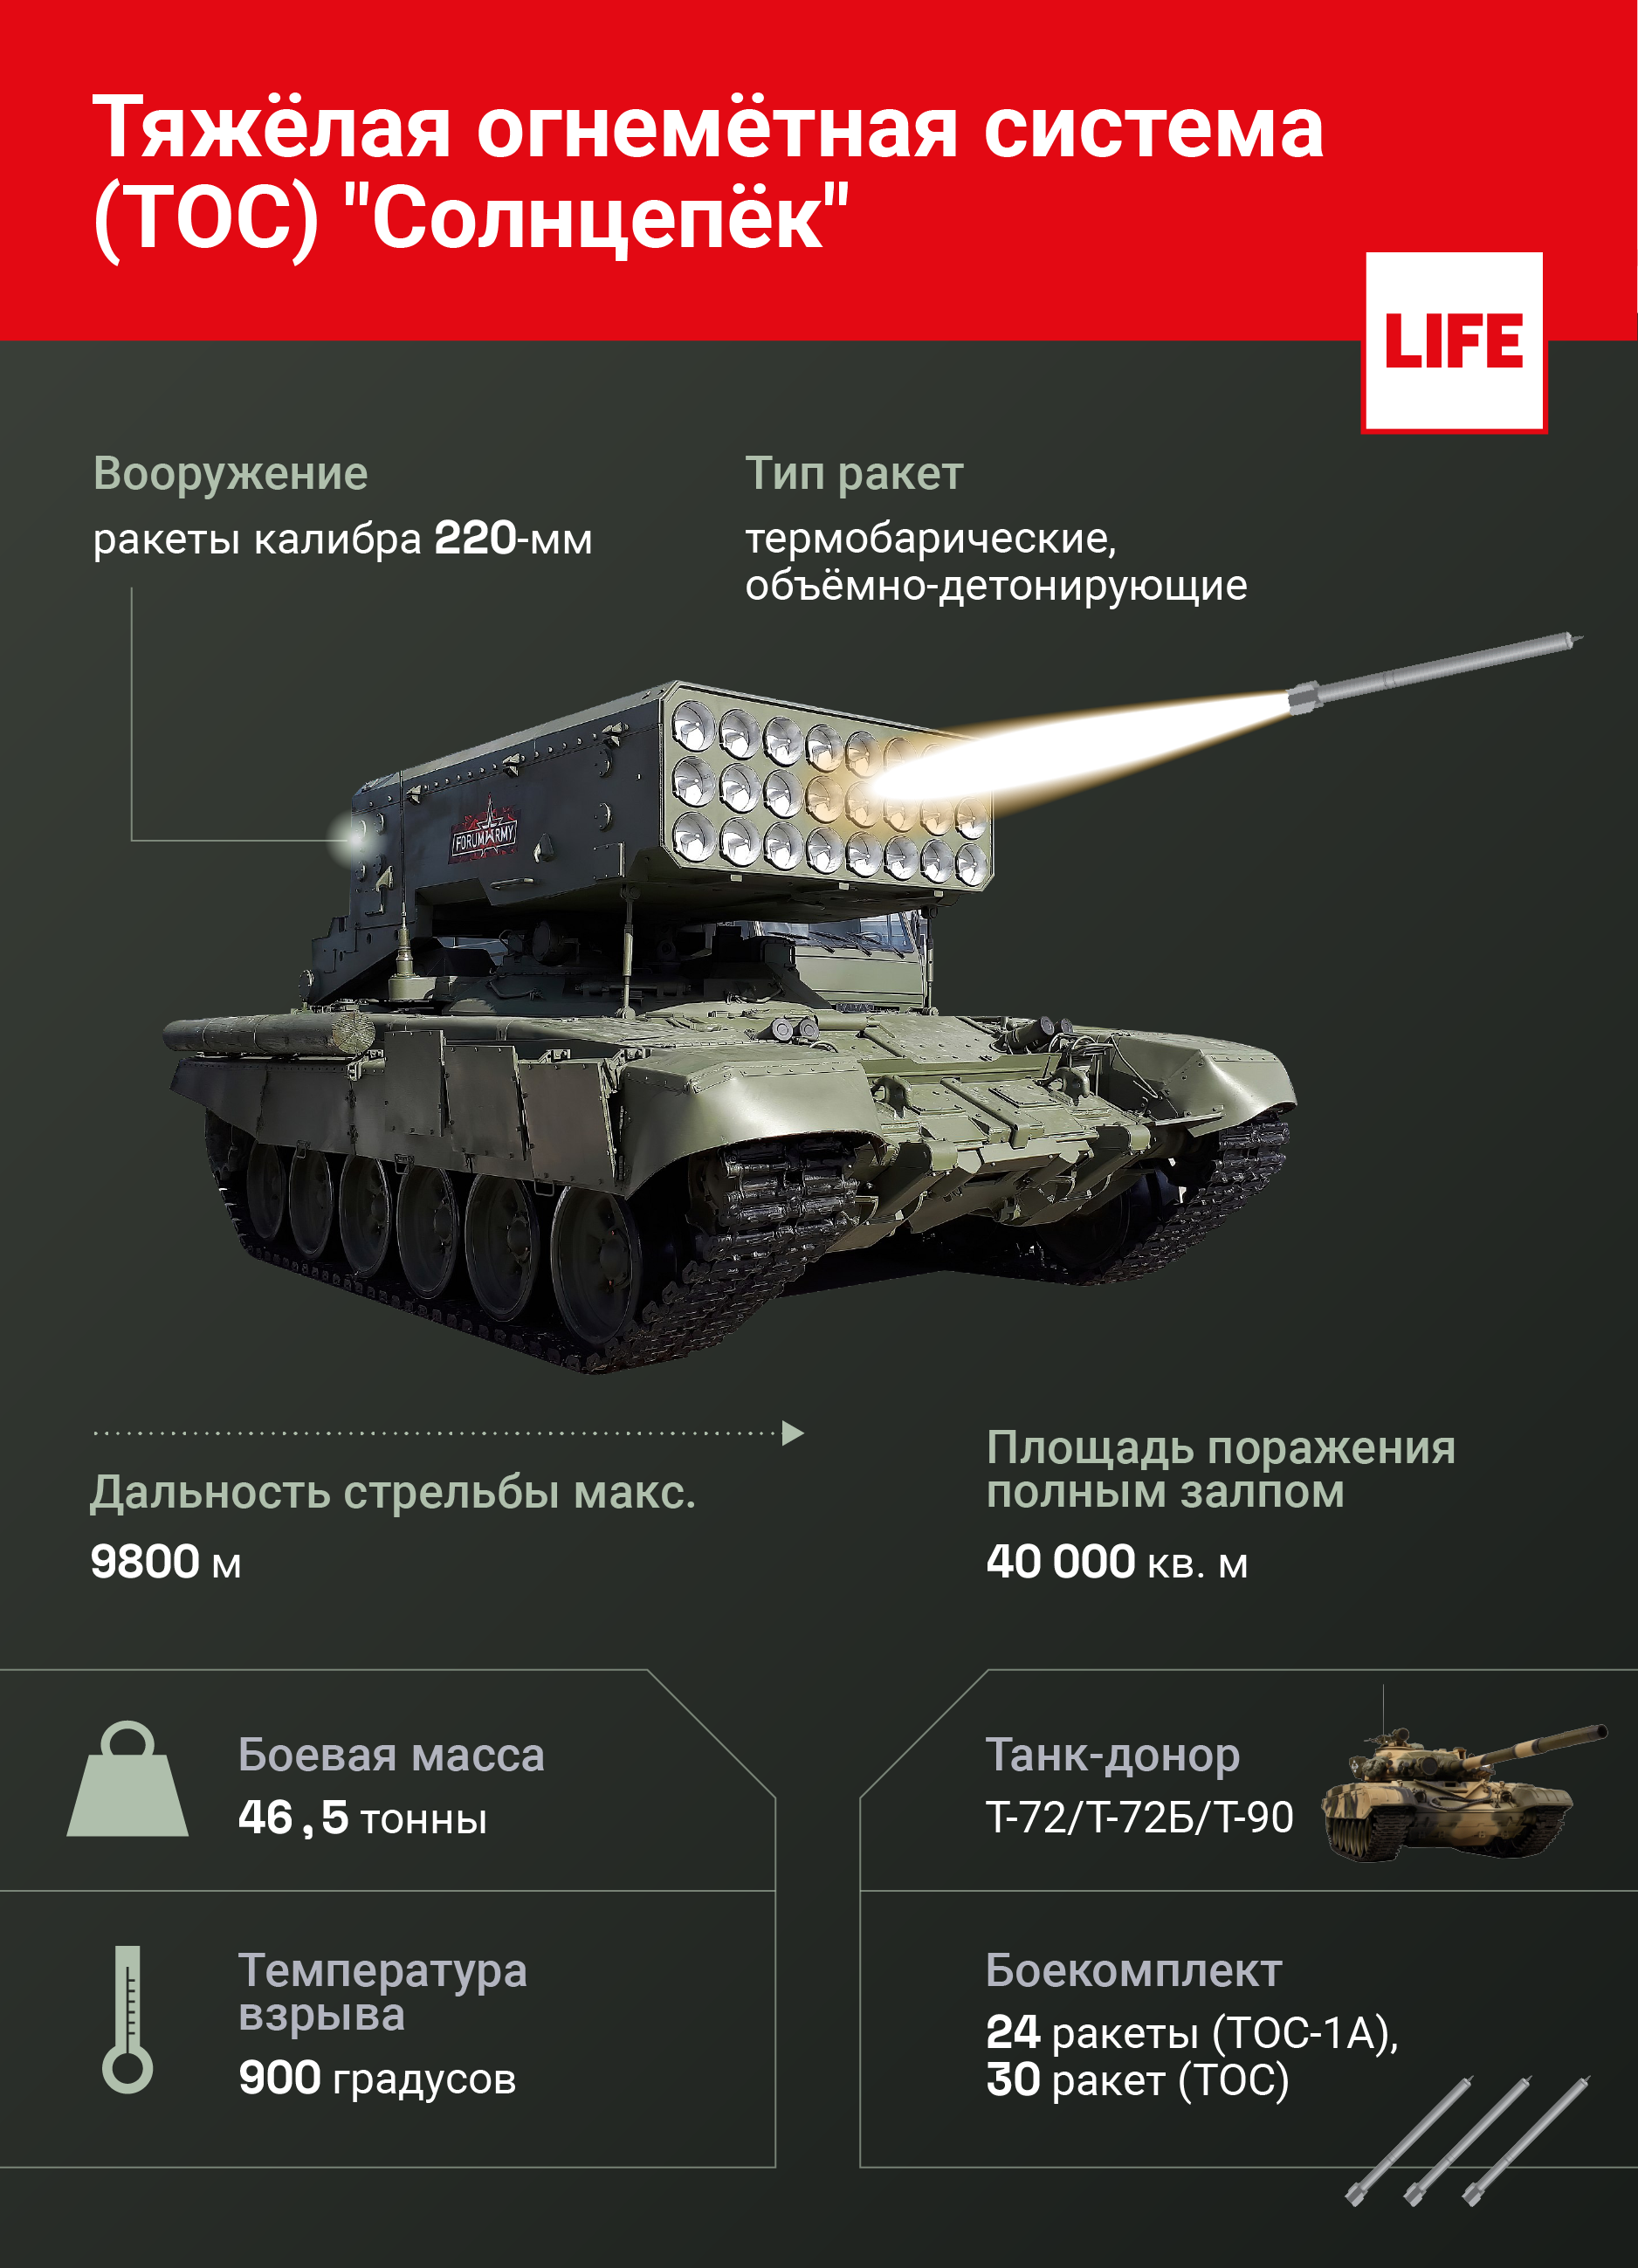 Тяжёлая огнемётная система (ТОС) "Солнцепёк". Инфографика © LIFE